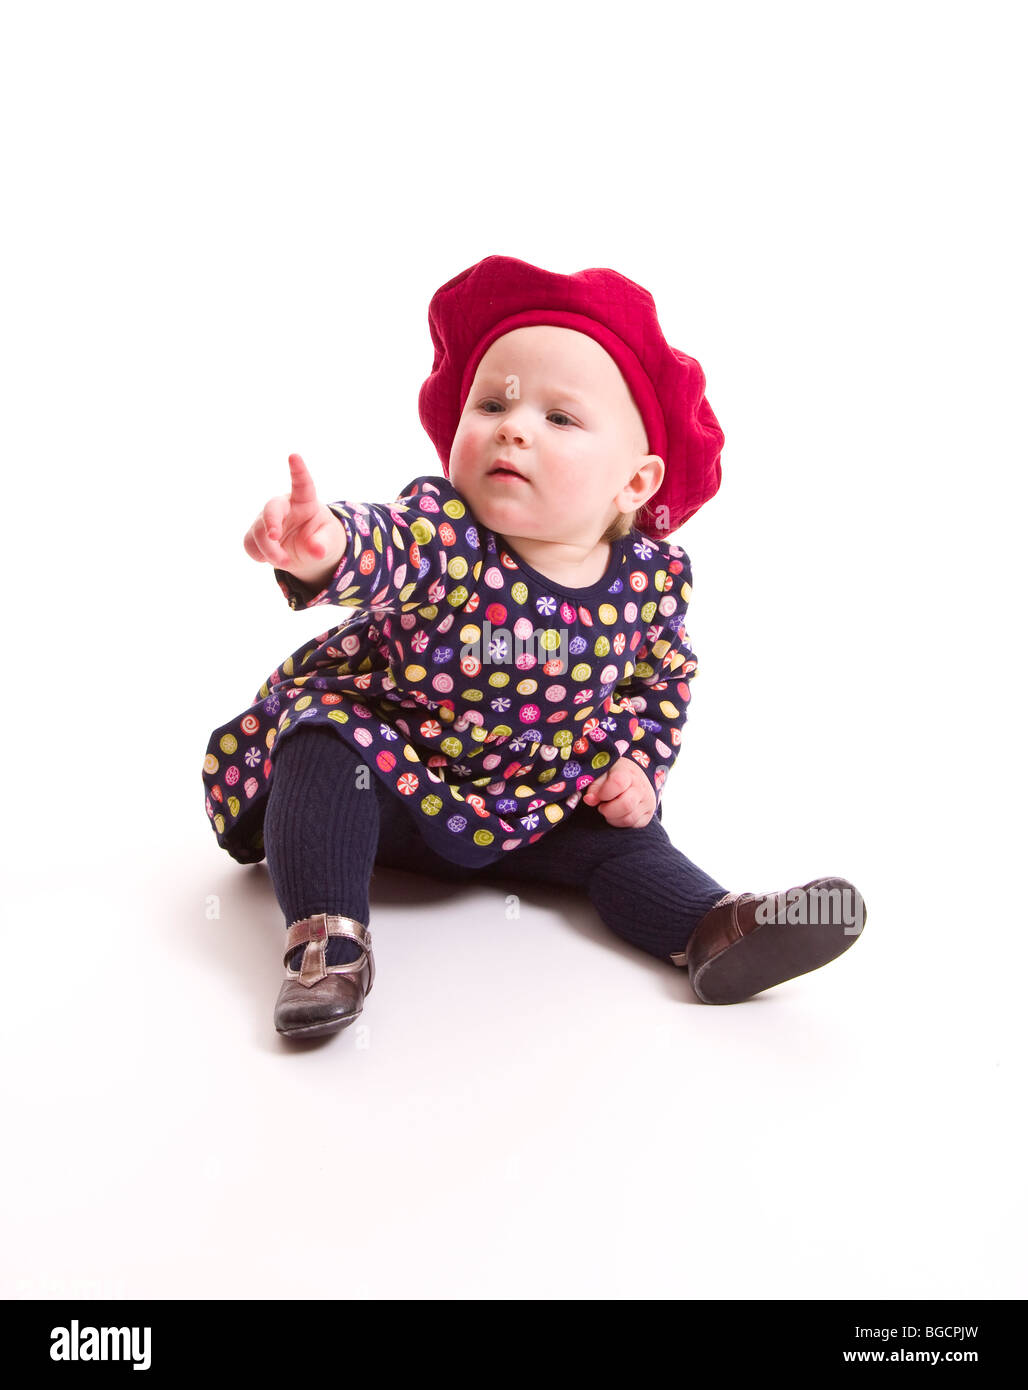 1 Jahr alt kleines Mädchen Punkte mit dem Finger isoliert auf weiss Stockfoto